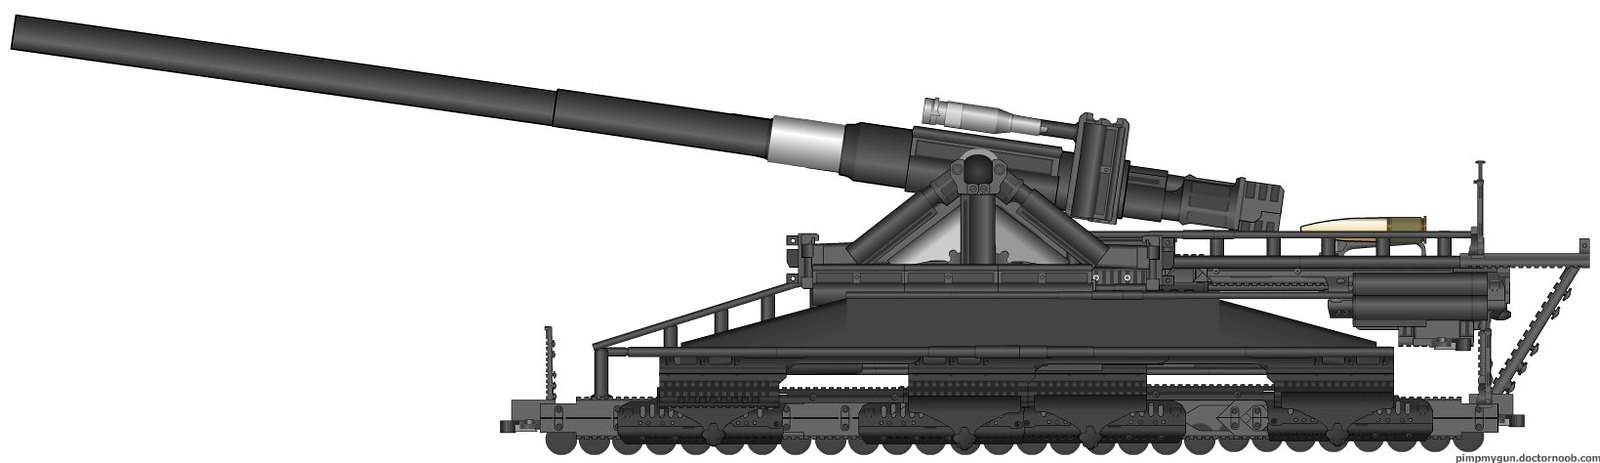 Schwerer Gustav railway gun